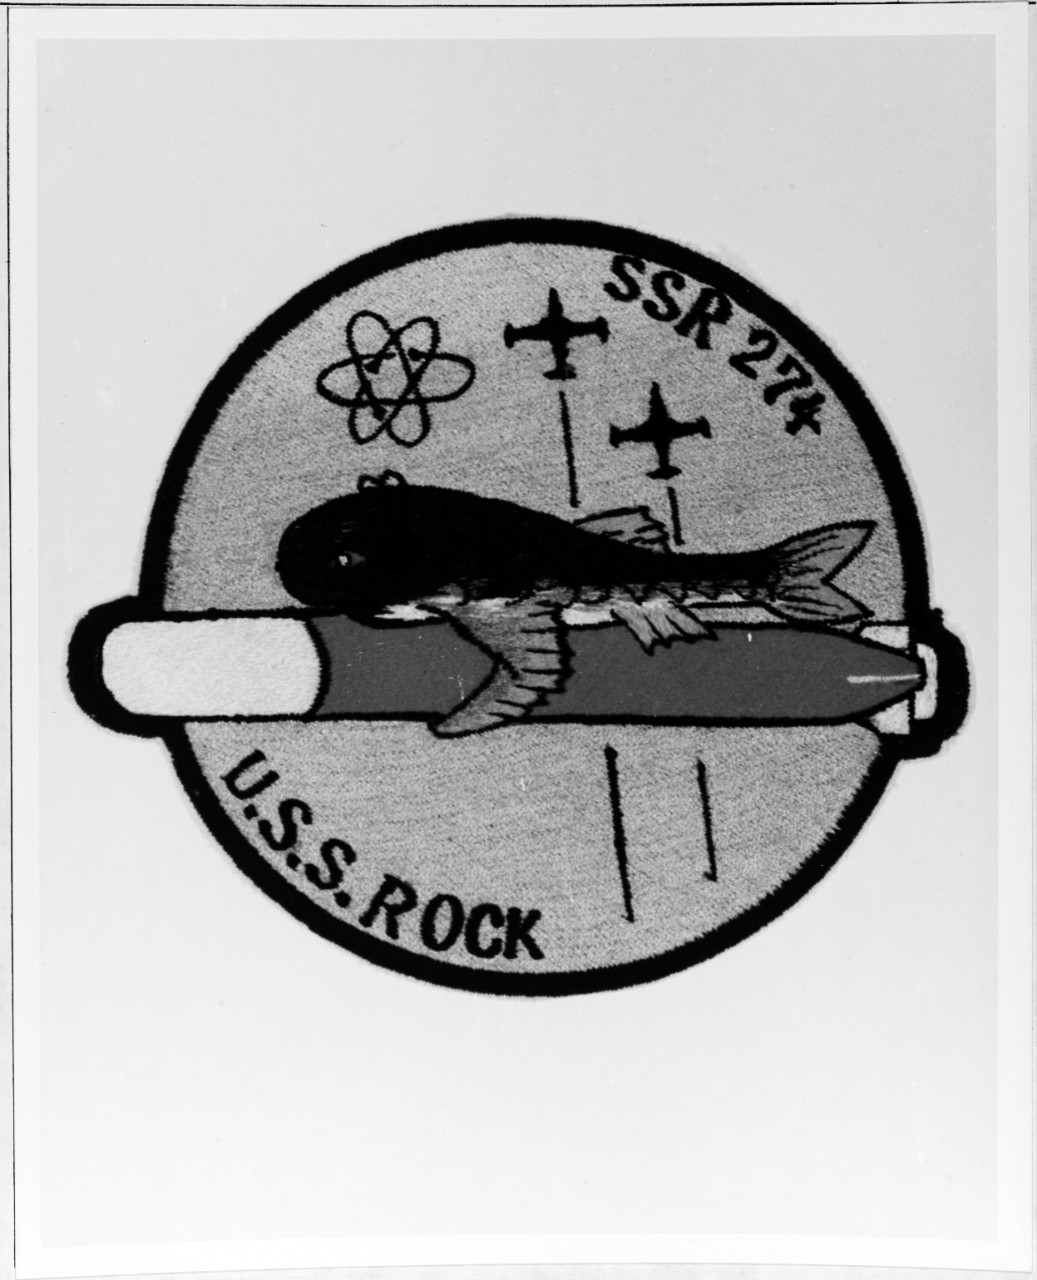 Insignia:  USS ROCK (SSR-274)